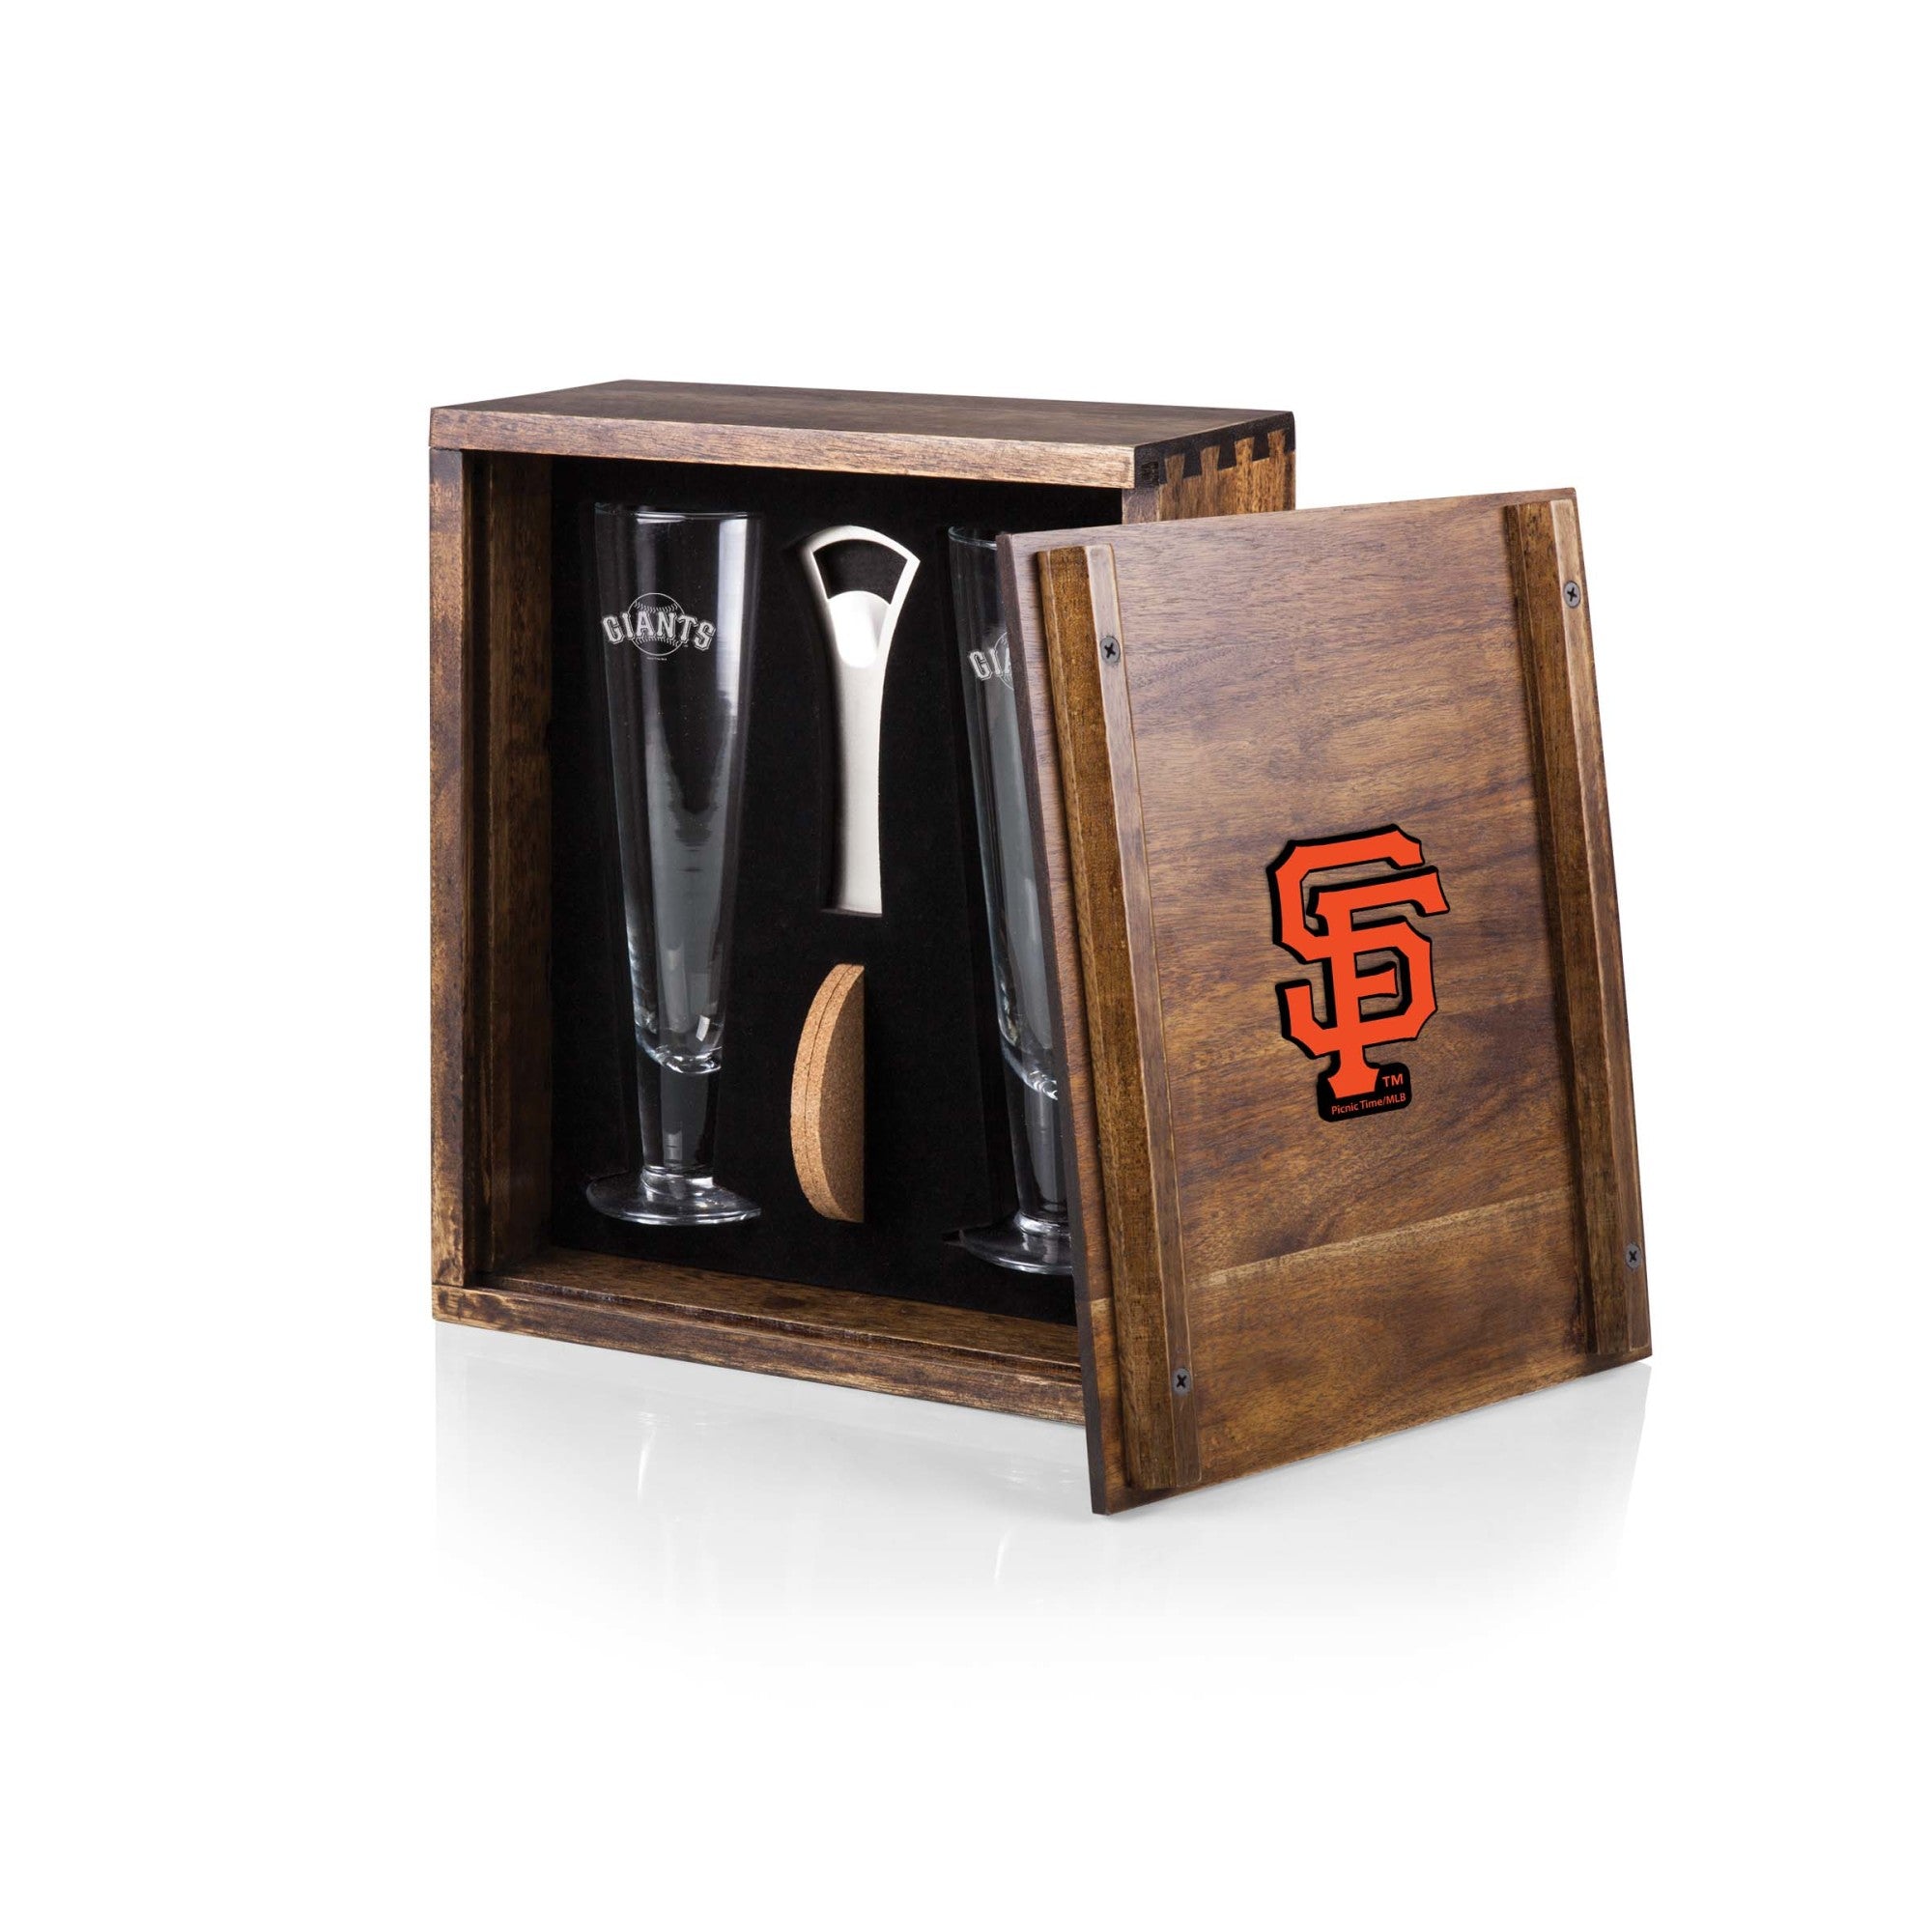 San Francisco Giants - Pilsner Beer Glass Gift Set